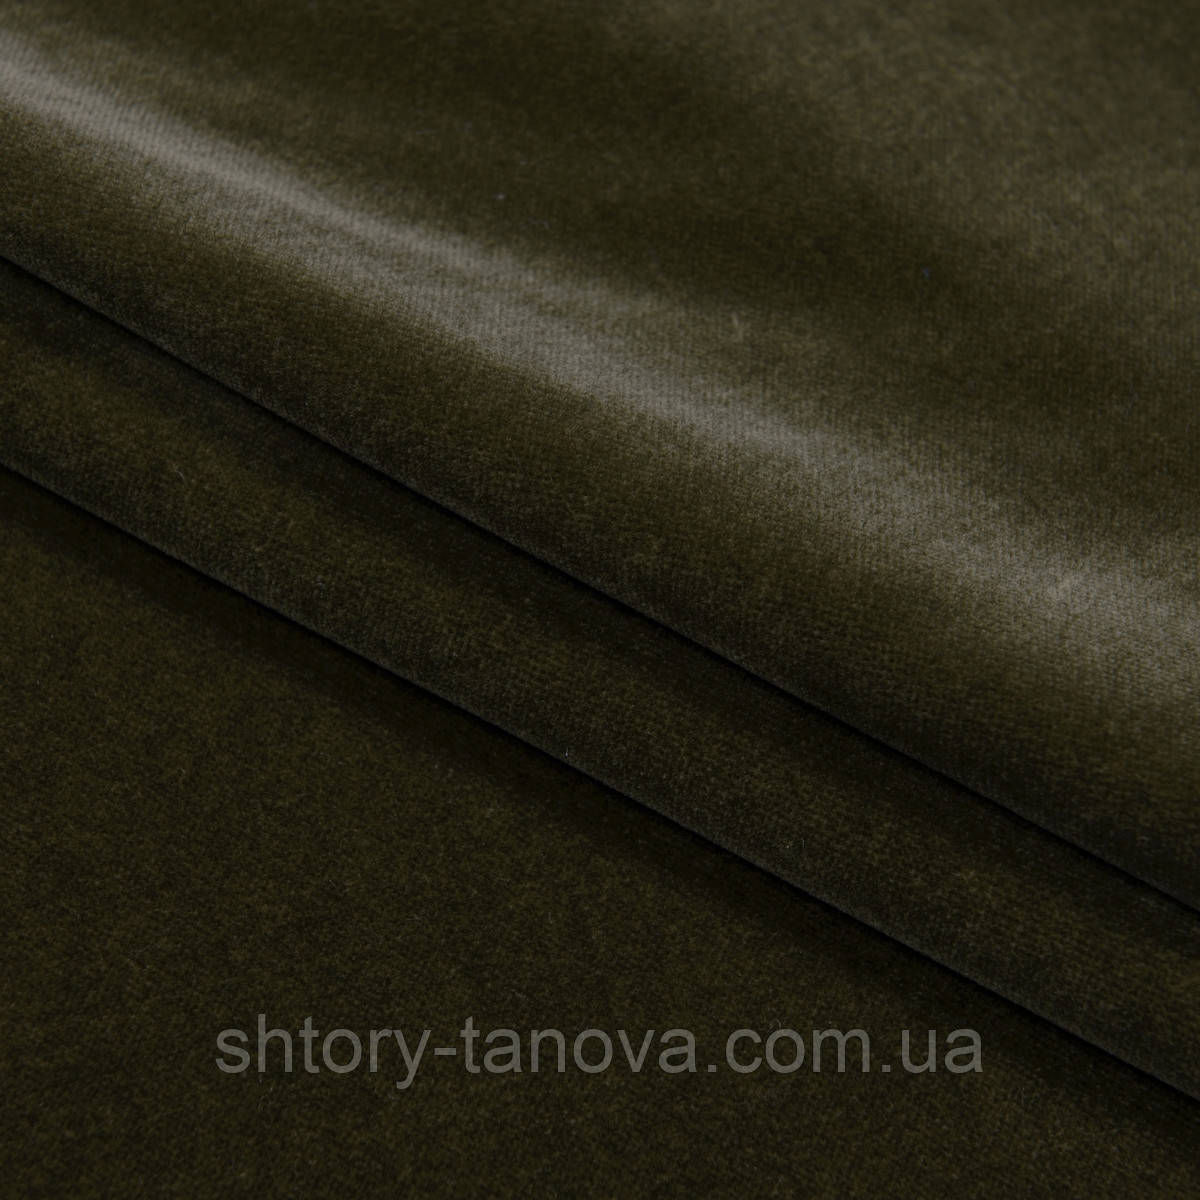 Меблева тканина Матеріал для оббивки меблів велюр Натуральний оксамит, Італія, 140 см велюр  т. оливковий